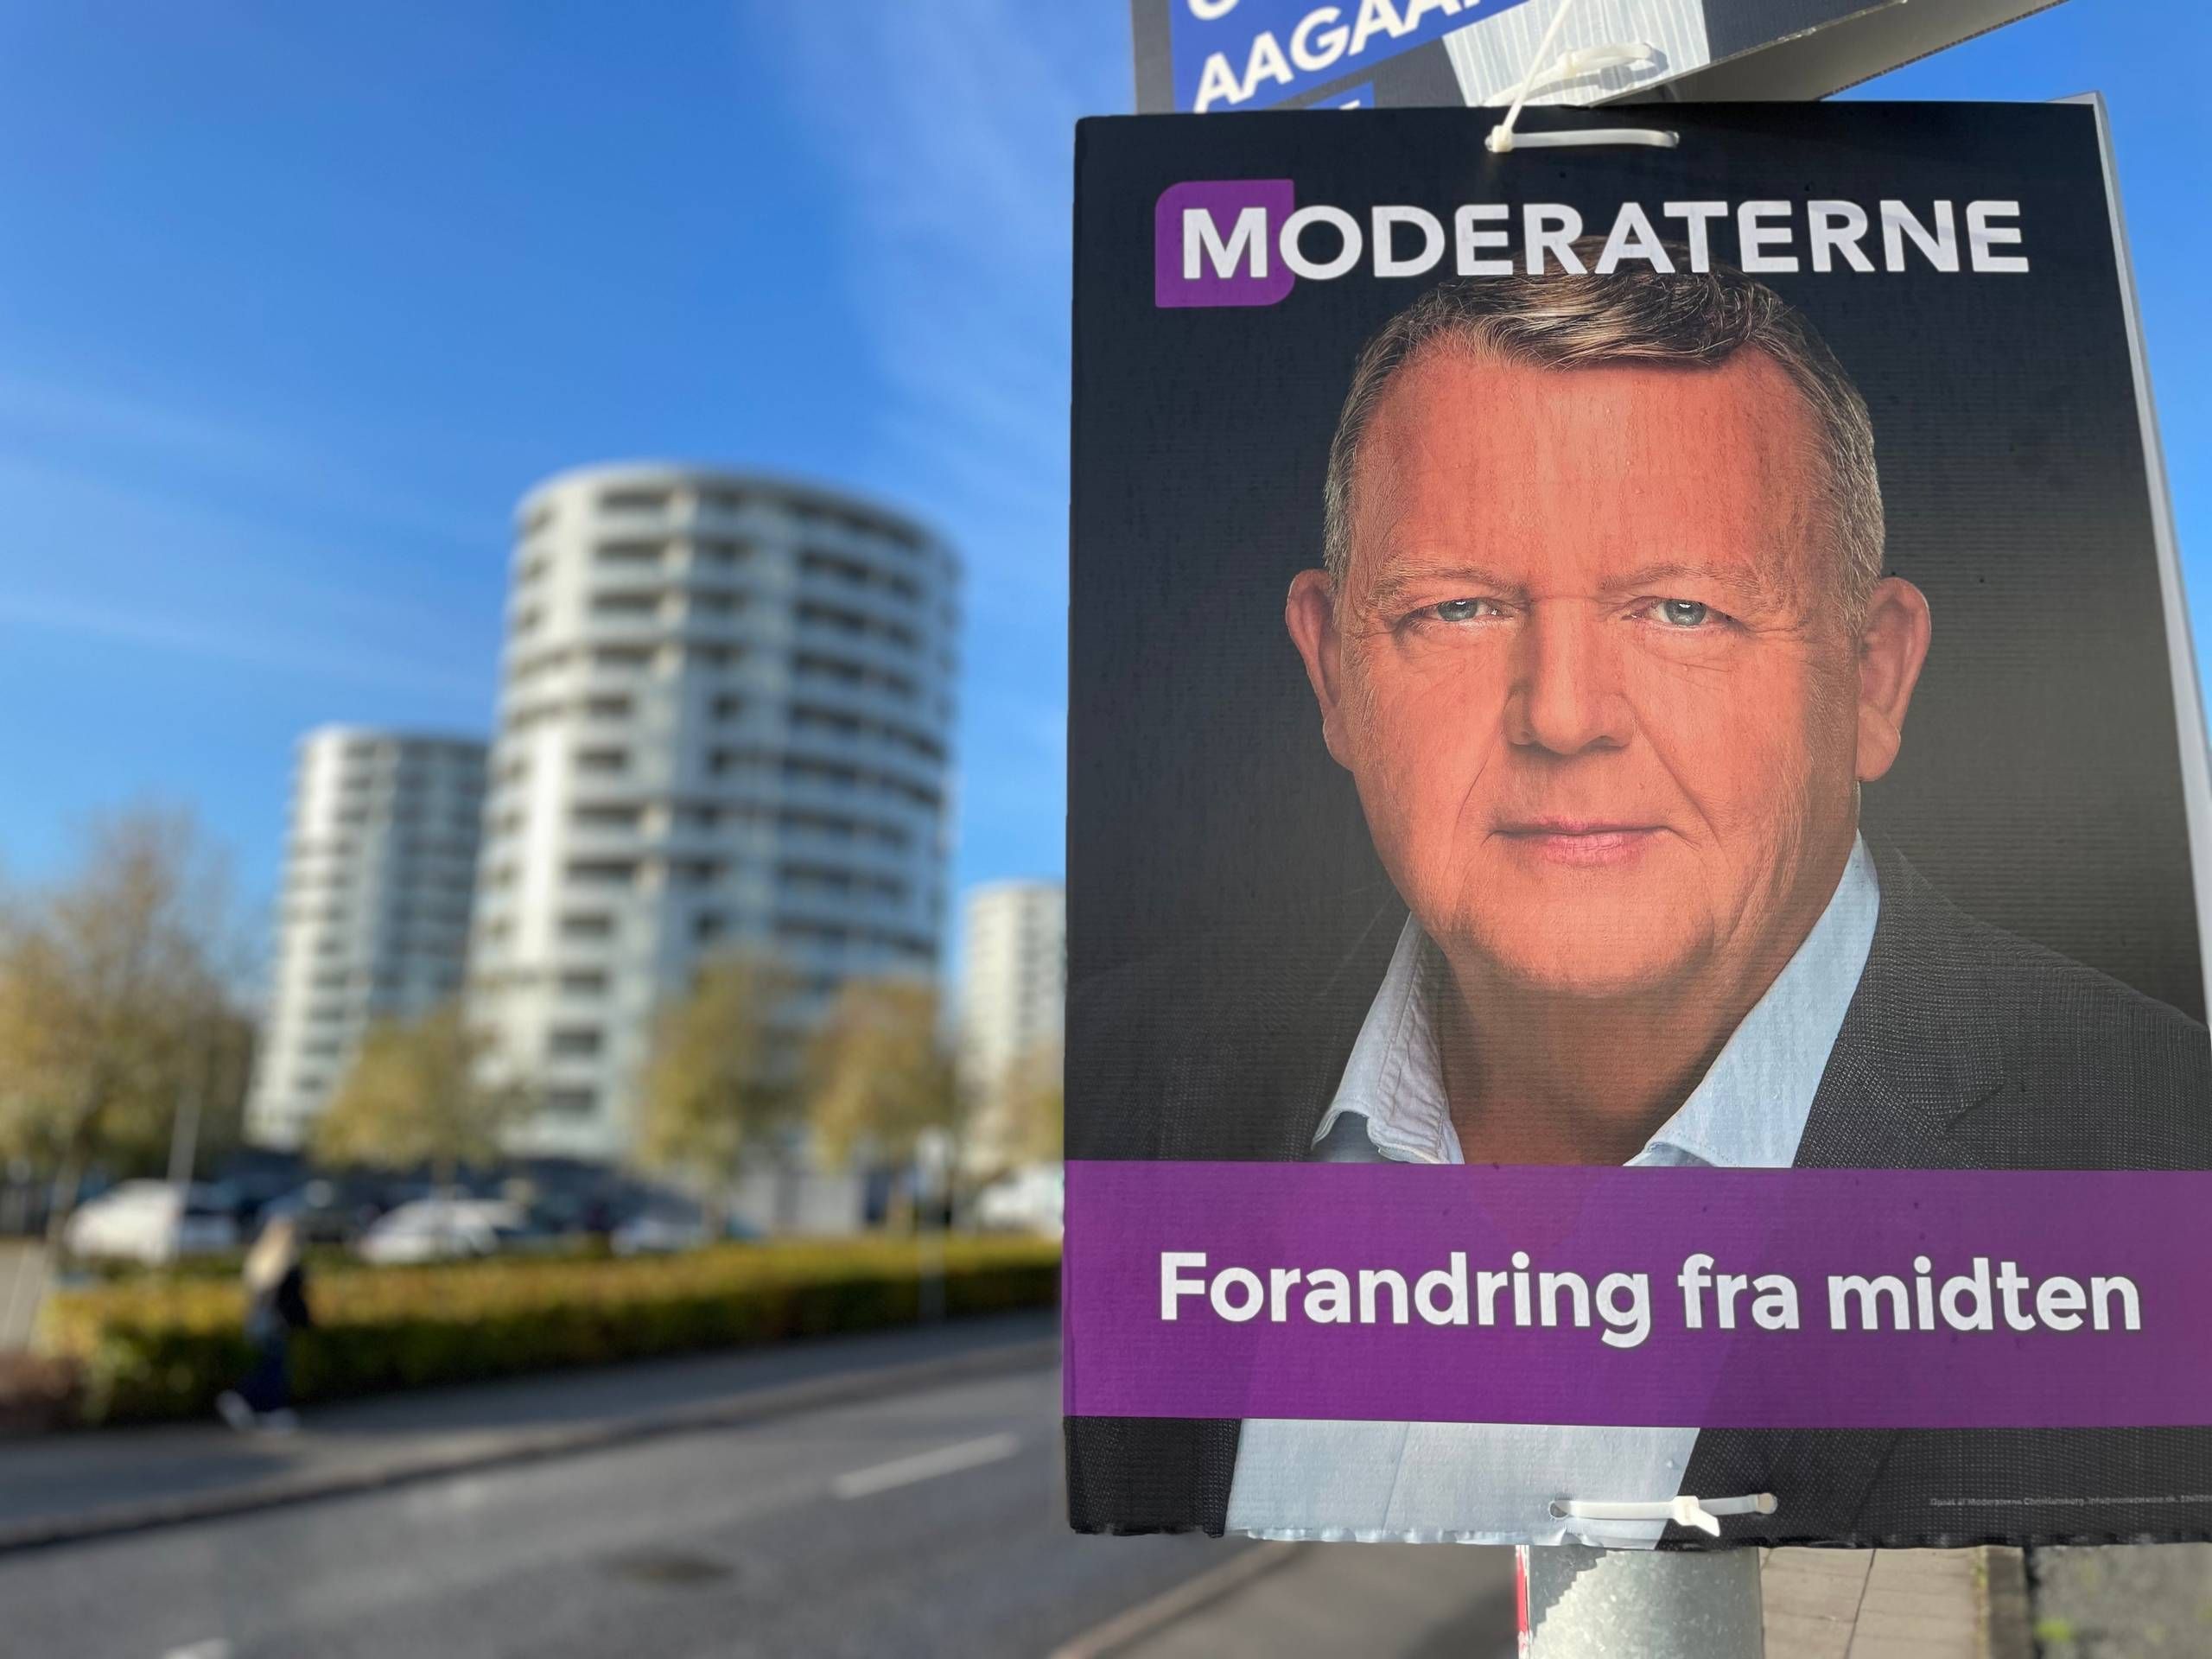 skrædder Kakadu Specialisere Hvorfor hænger Lars Løkke i lygtepælene i Vejle, når man ikke kan stemme på  ham?